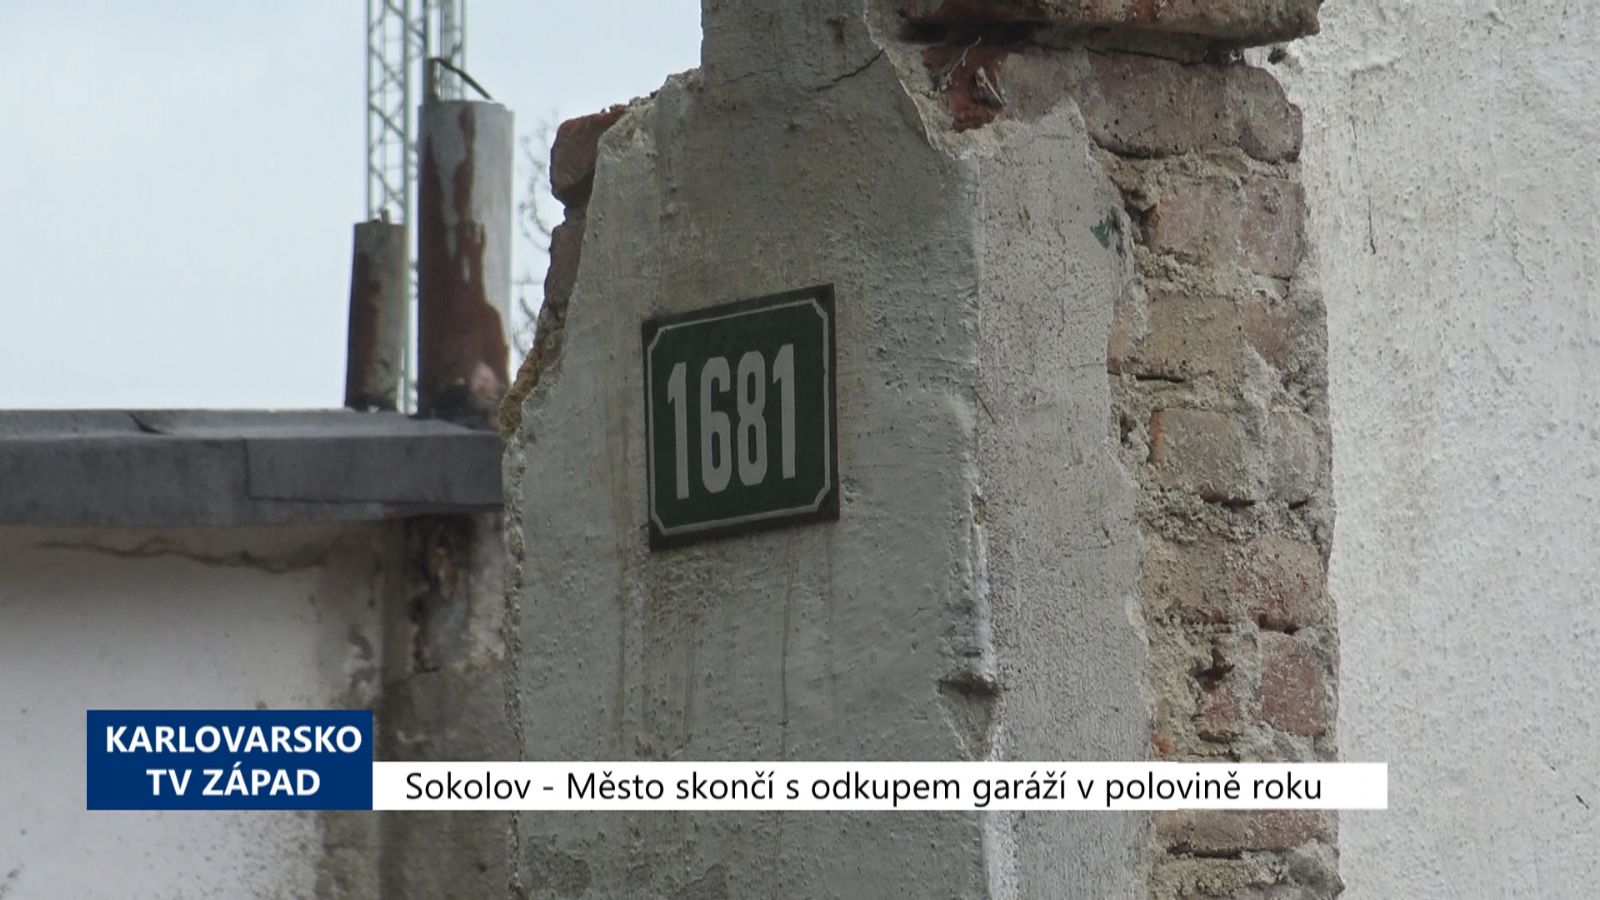 Sokolov: Město skončí s odkupem garáží v polovině roku (TV Západ) 